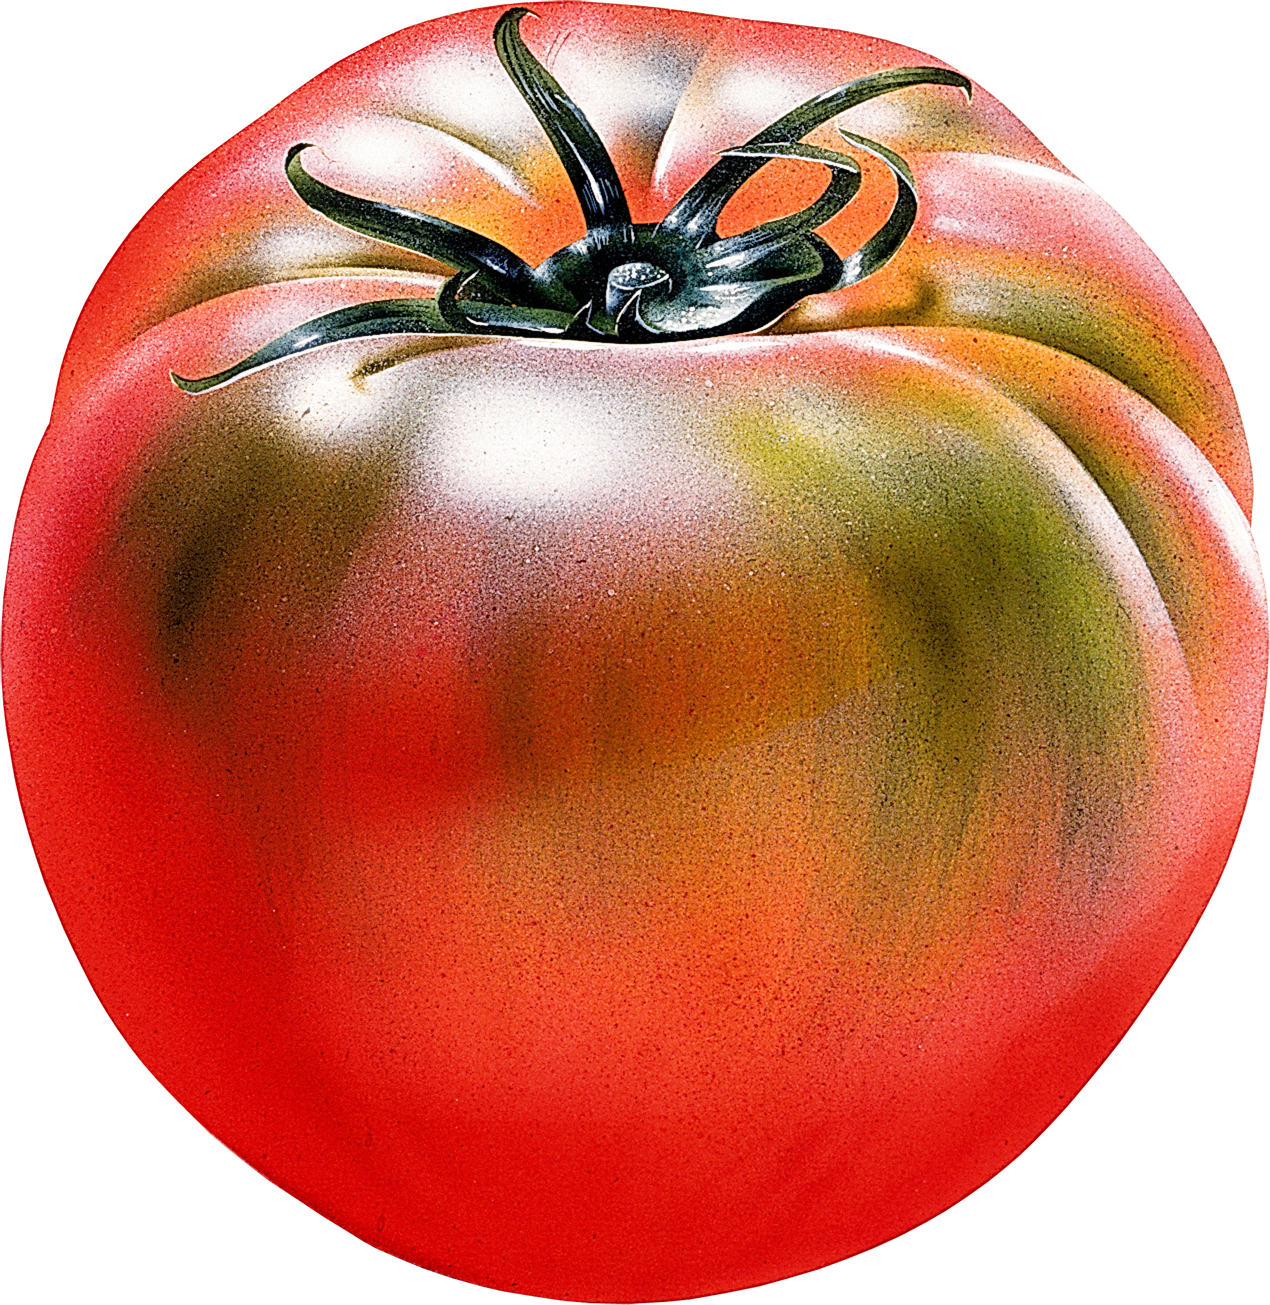 Tomat segar besar